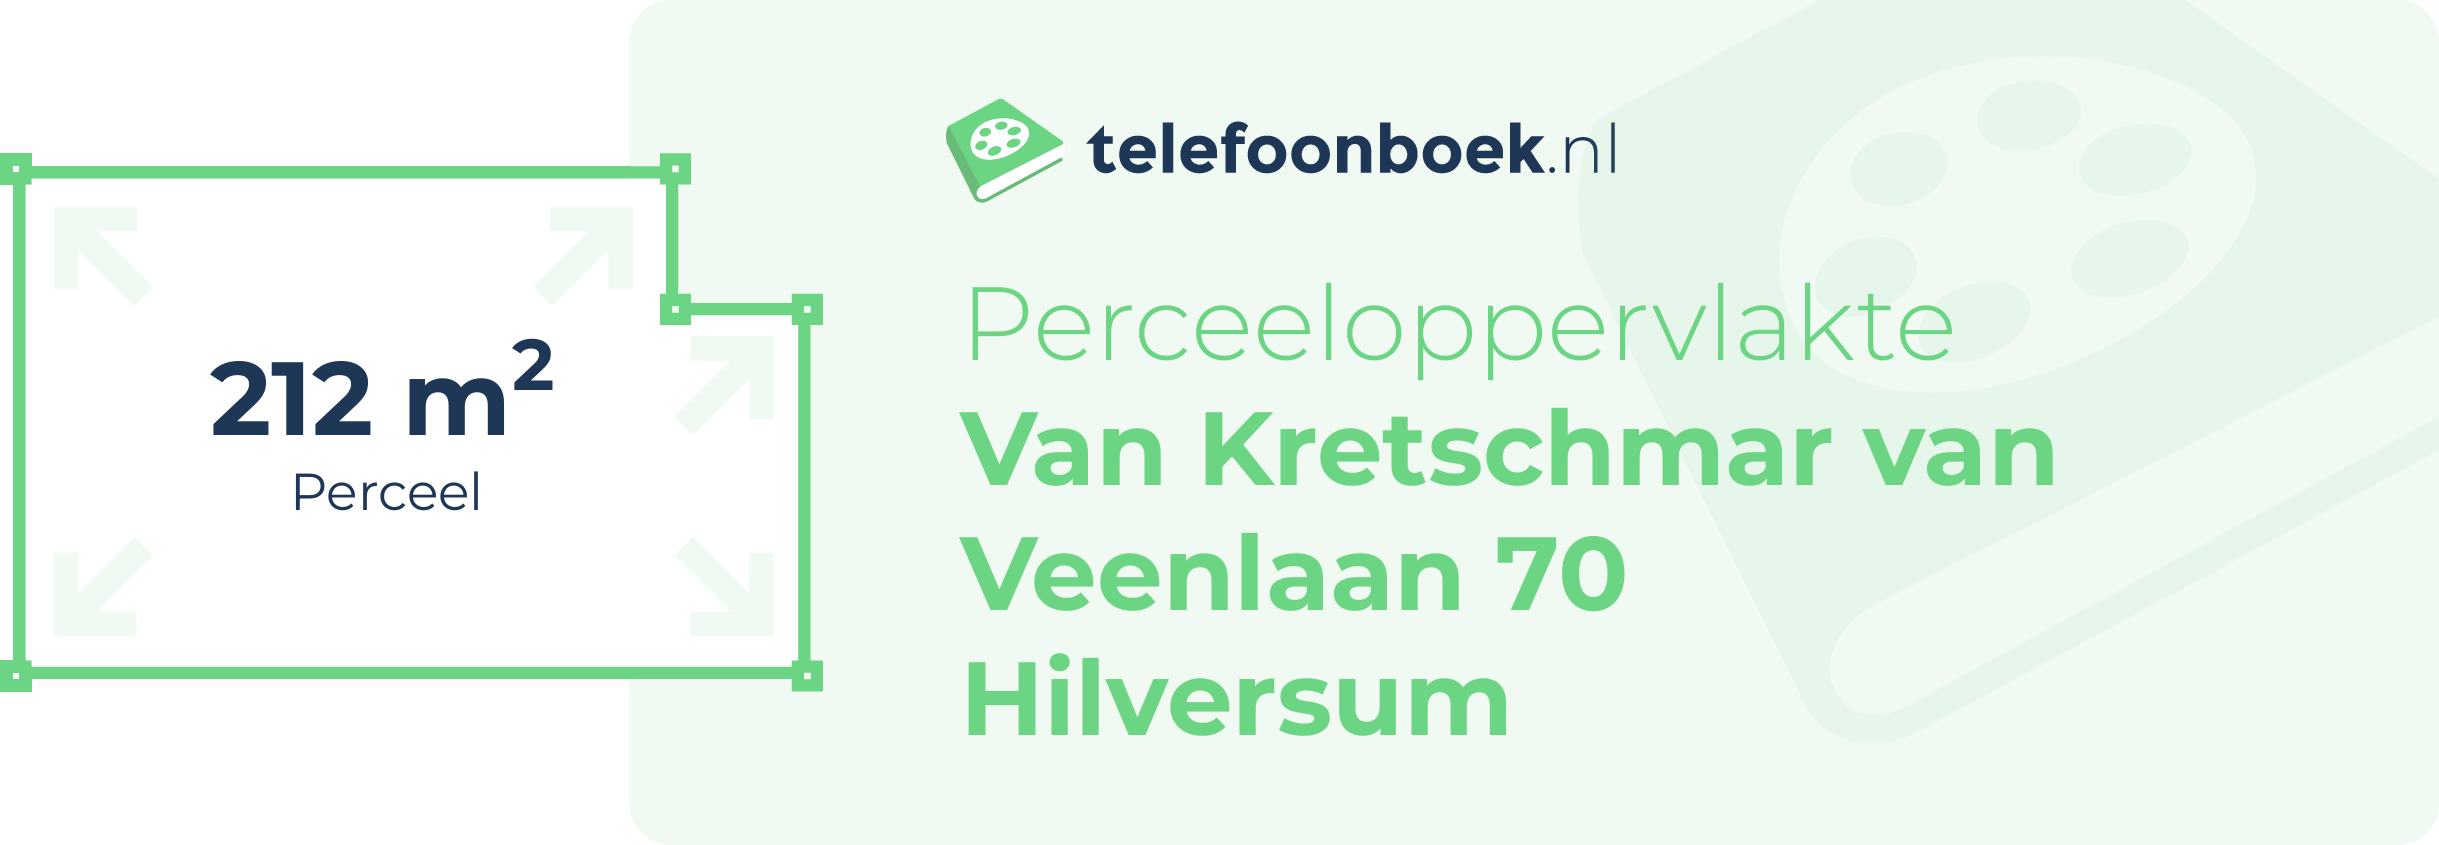 Perceeloppervlakte Van Kretschmar Van Veenlaan 70 Hilversum